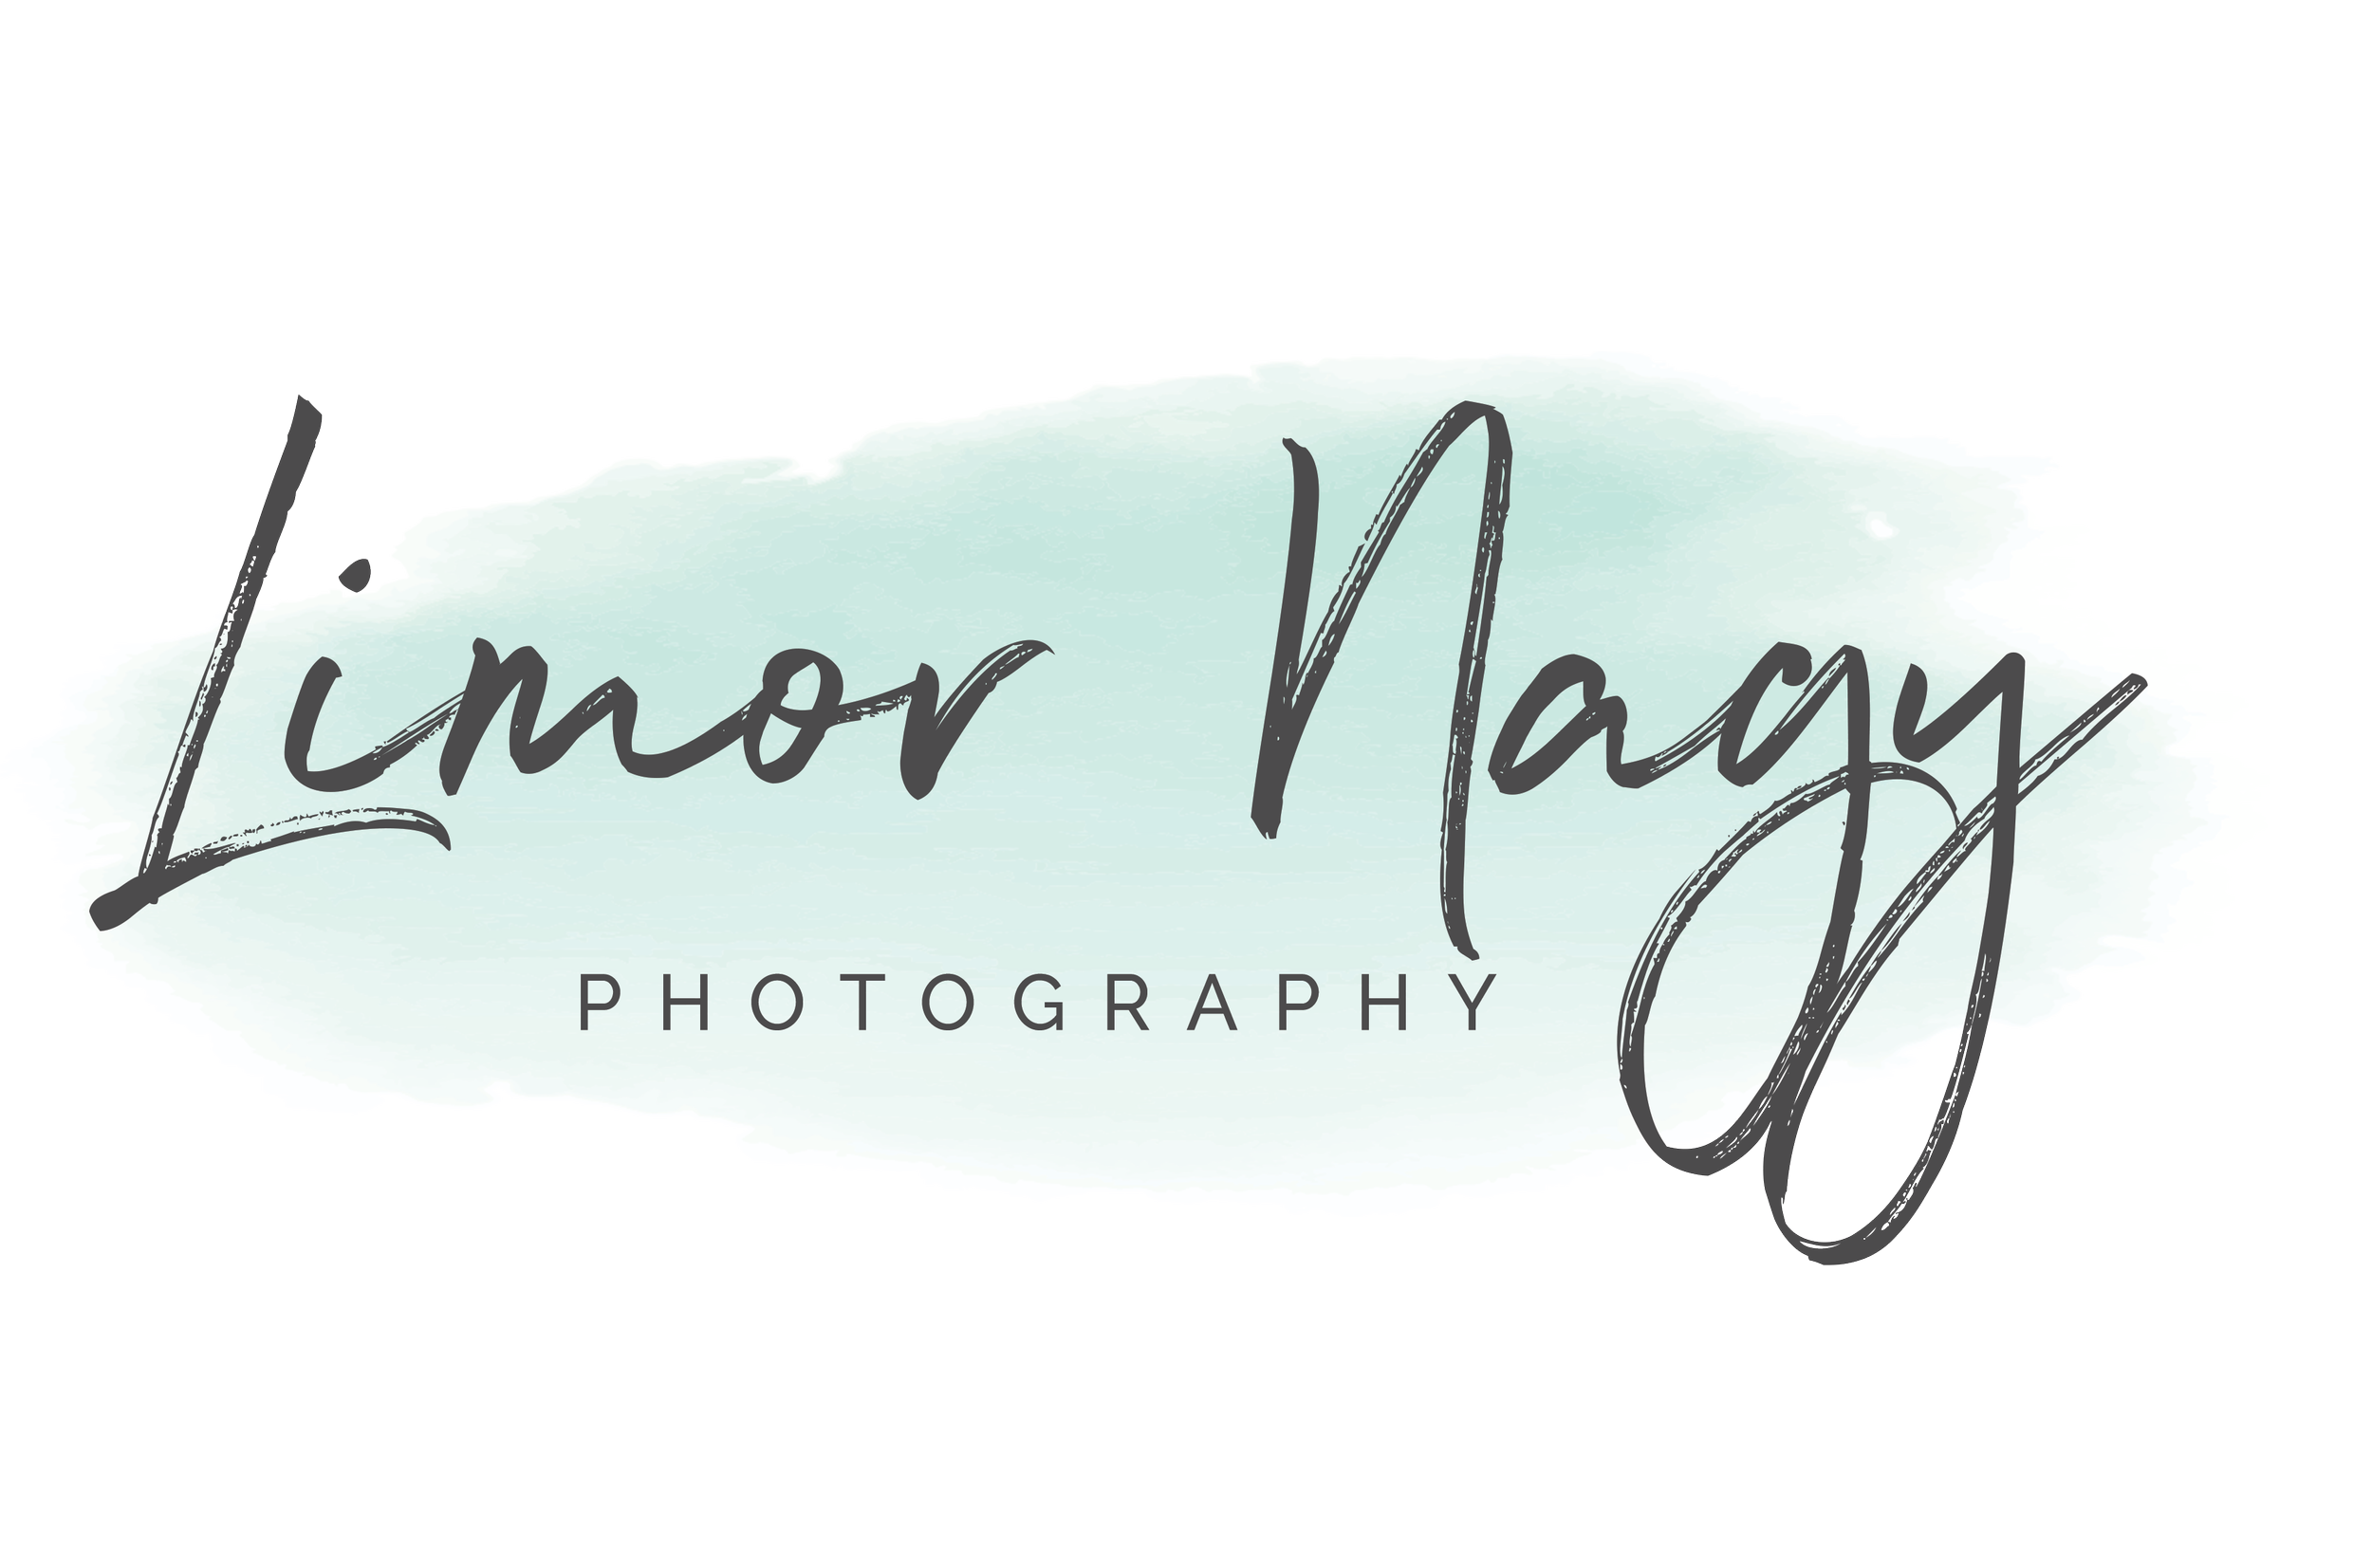 Limor Nagy Photography